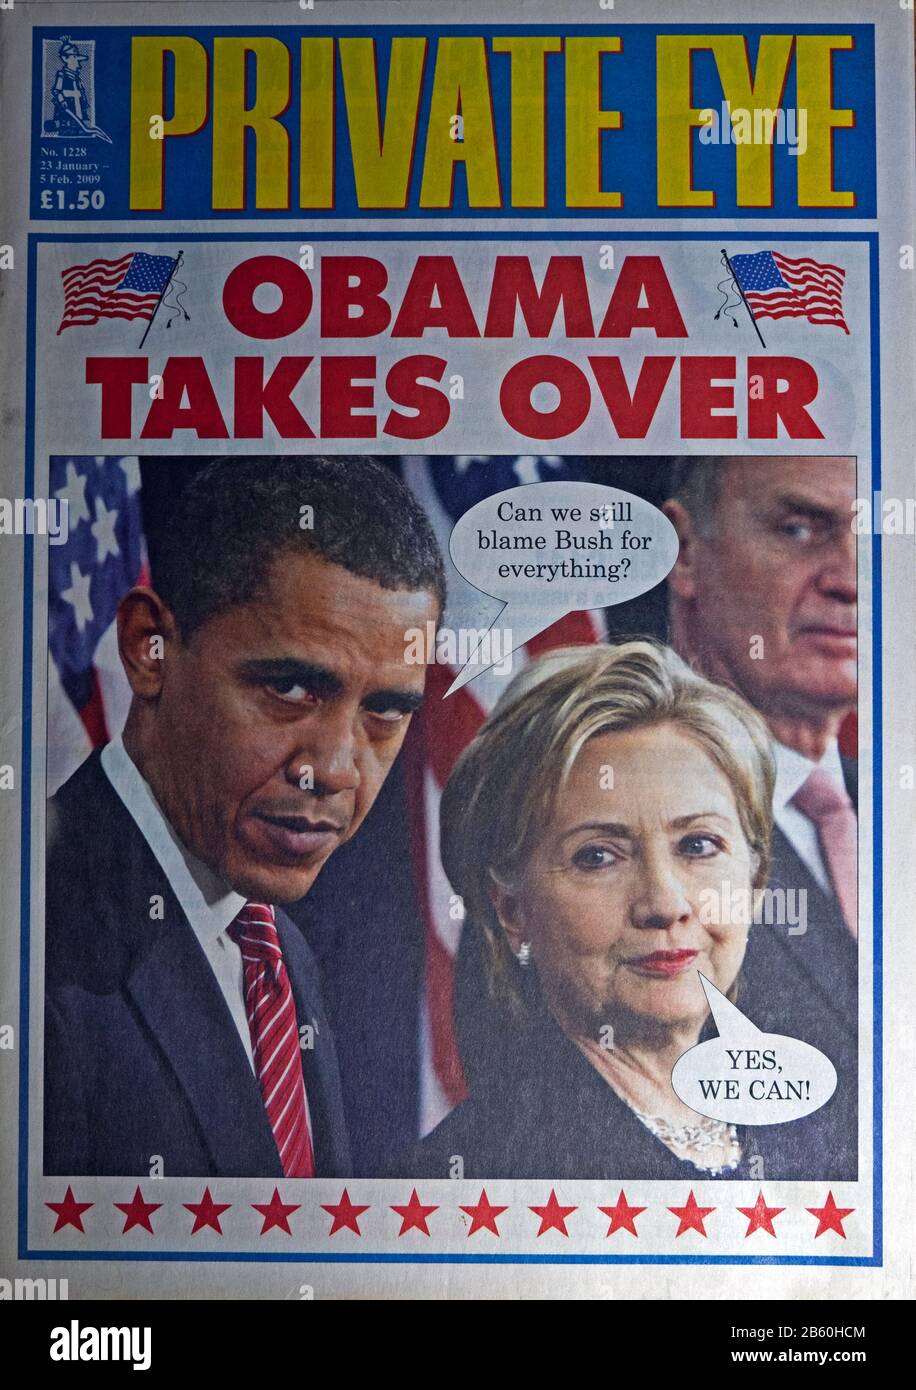 Première couverture du titre du magazine Private Eye « Obama prend Le Relais » avec Hillary Clinton en janvier 2009 Londres Angleterre Royaume-Uni Banque D'Images